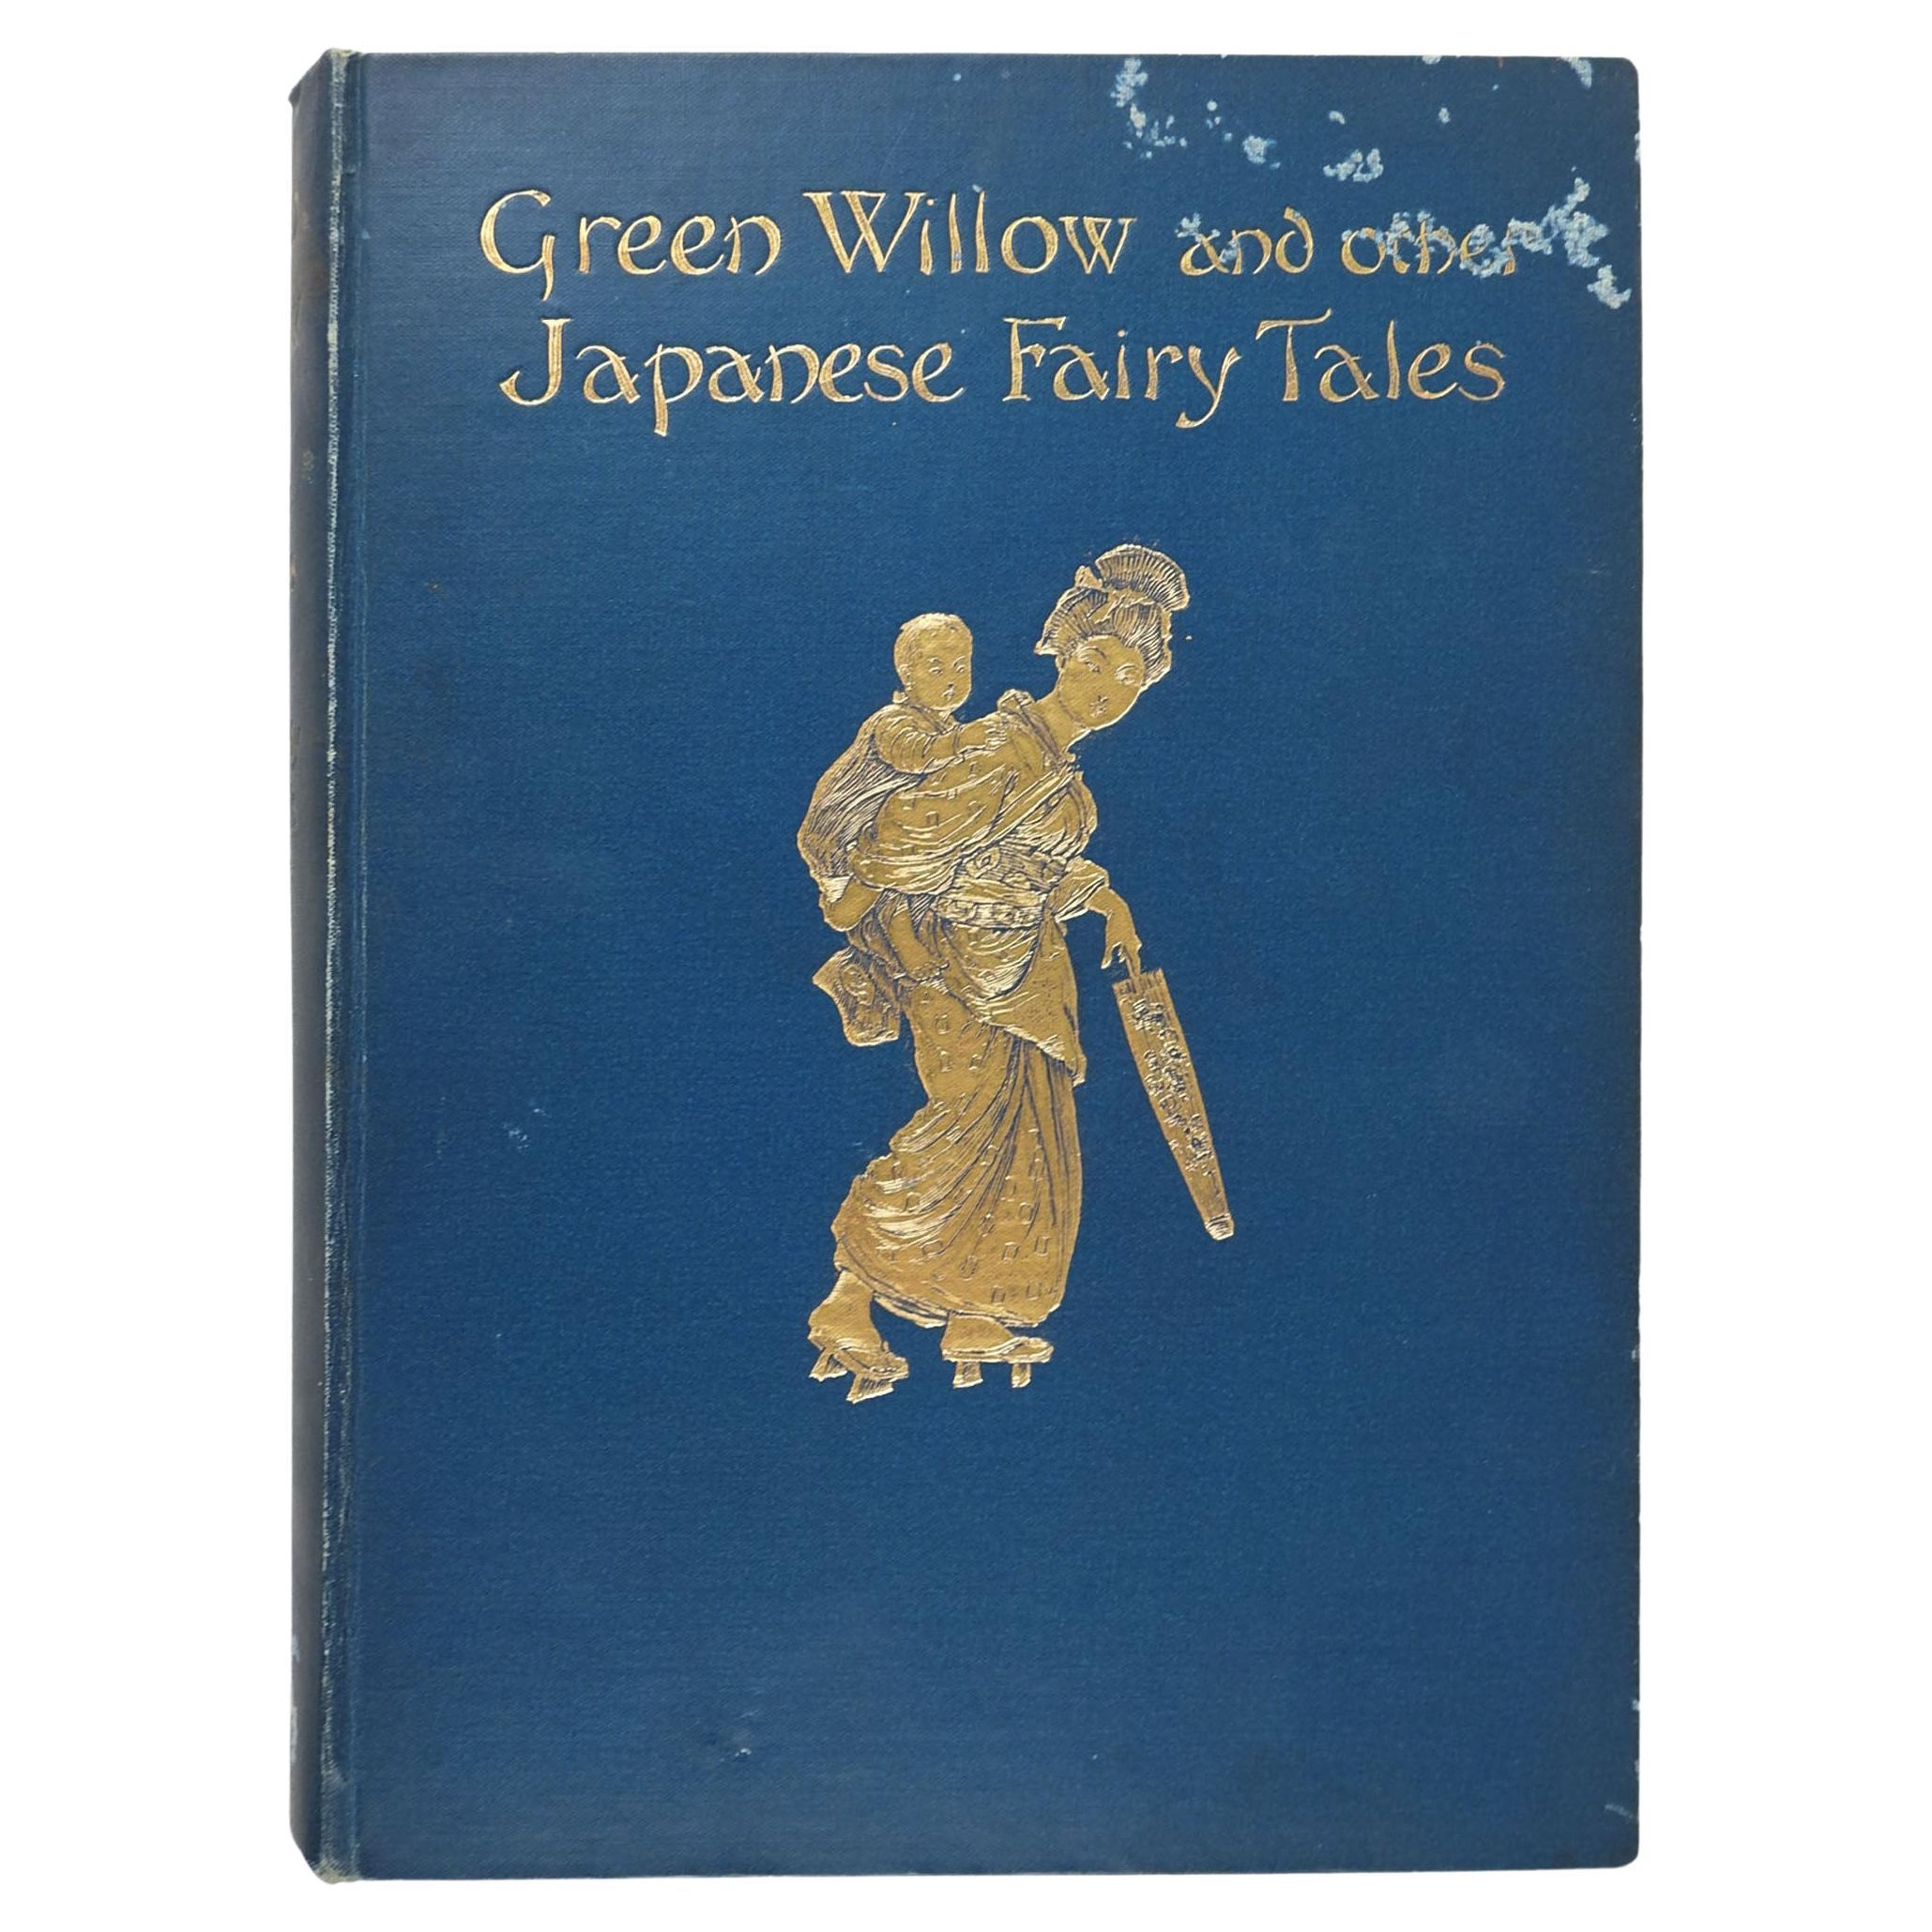 Libro Antiguo de 1910 Sauce verde y otros cuentos de hadas japoneses